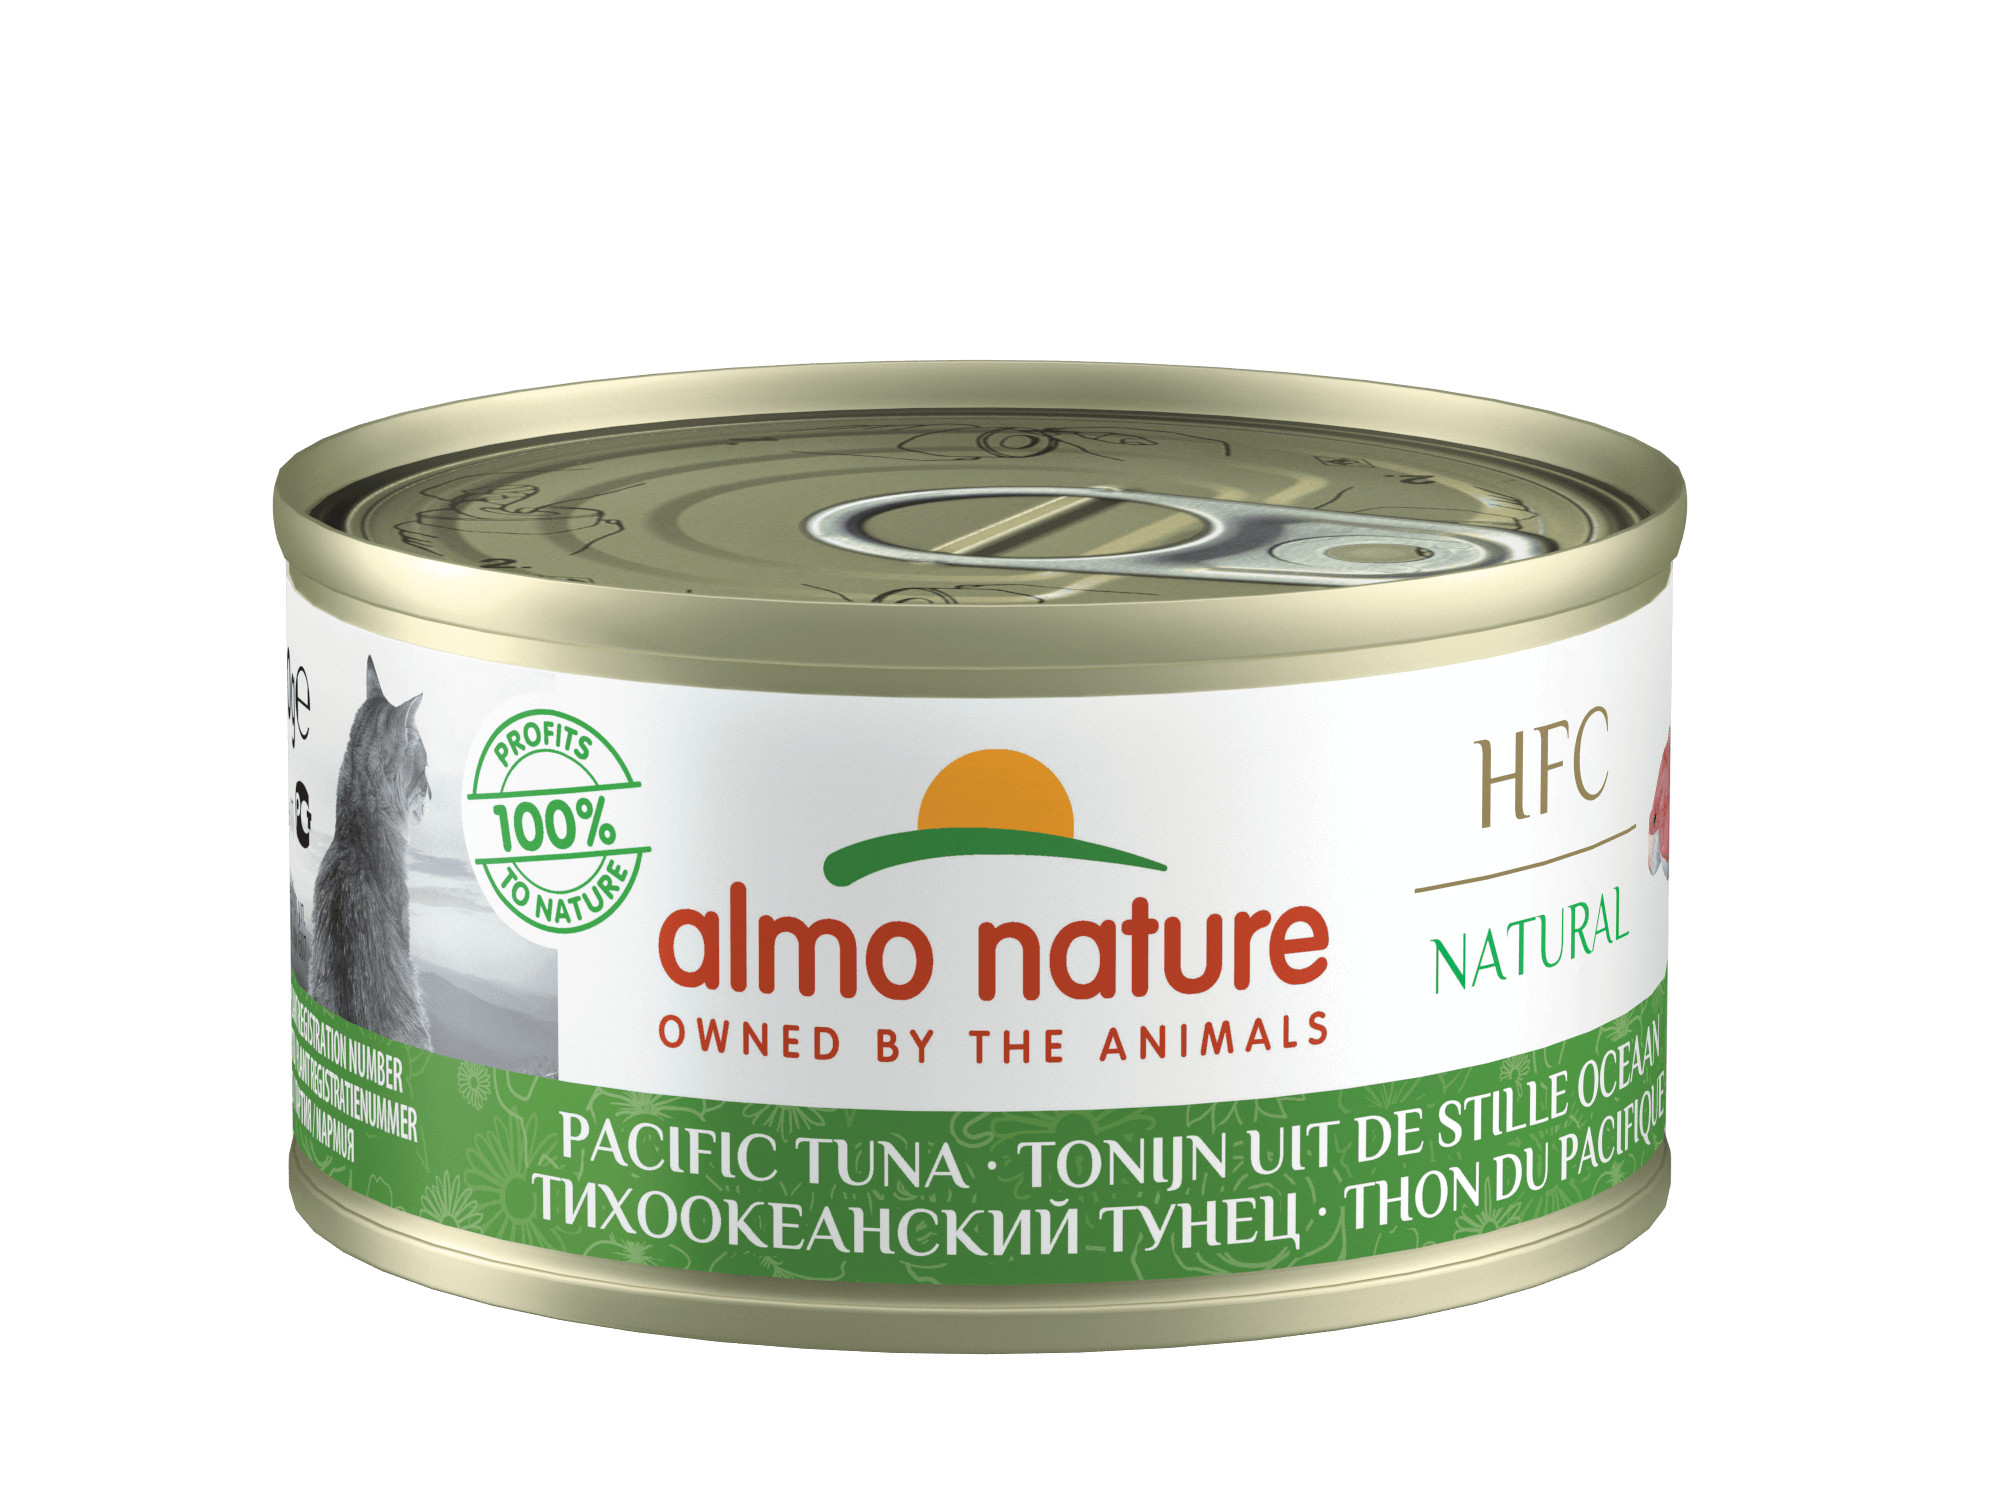 Almo Nature Natural Tonijn uit de Stille Oceaan 70 gram